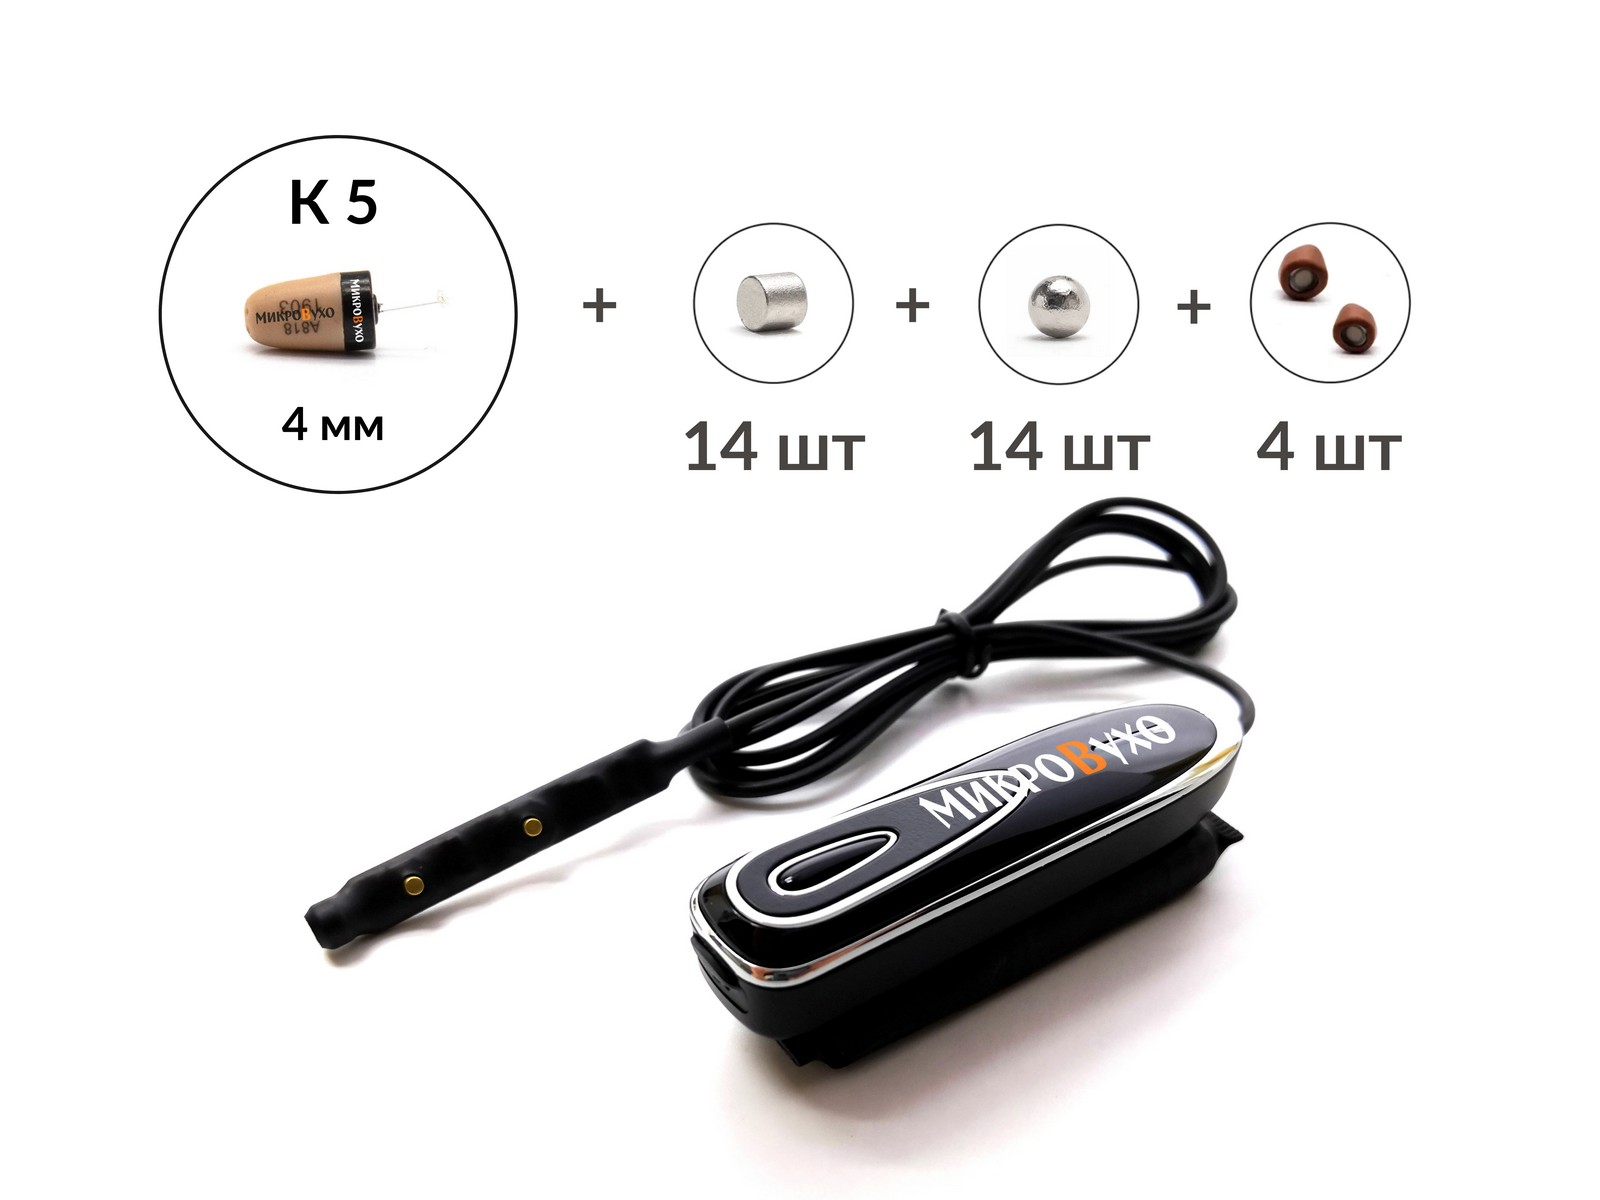 Bluetooth Box Premier Plus c кнопкой-пищалкой, капсулой К5 4 мм и магнитами 2 мм - изображение 4